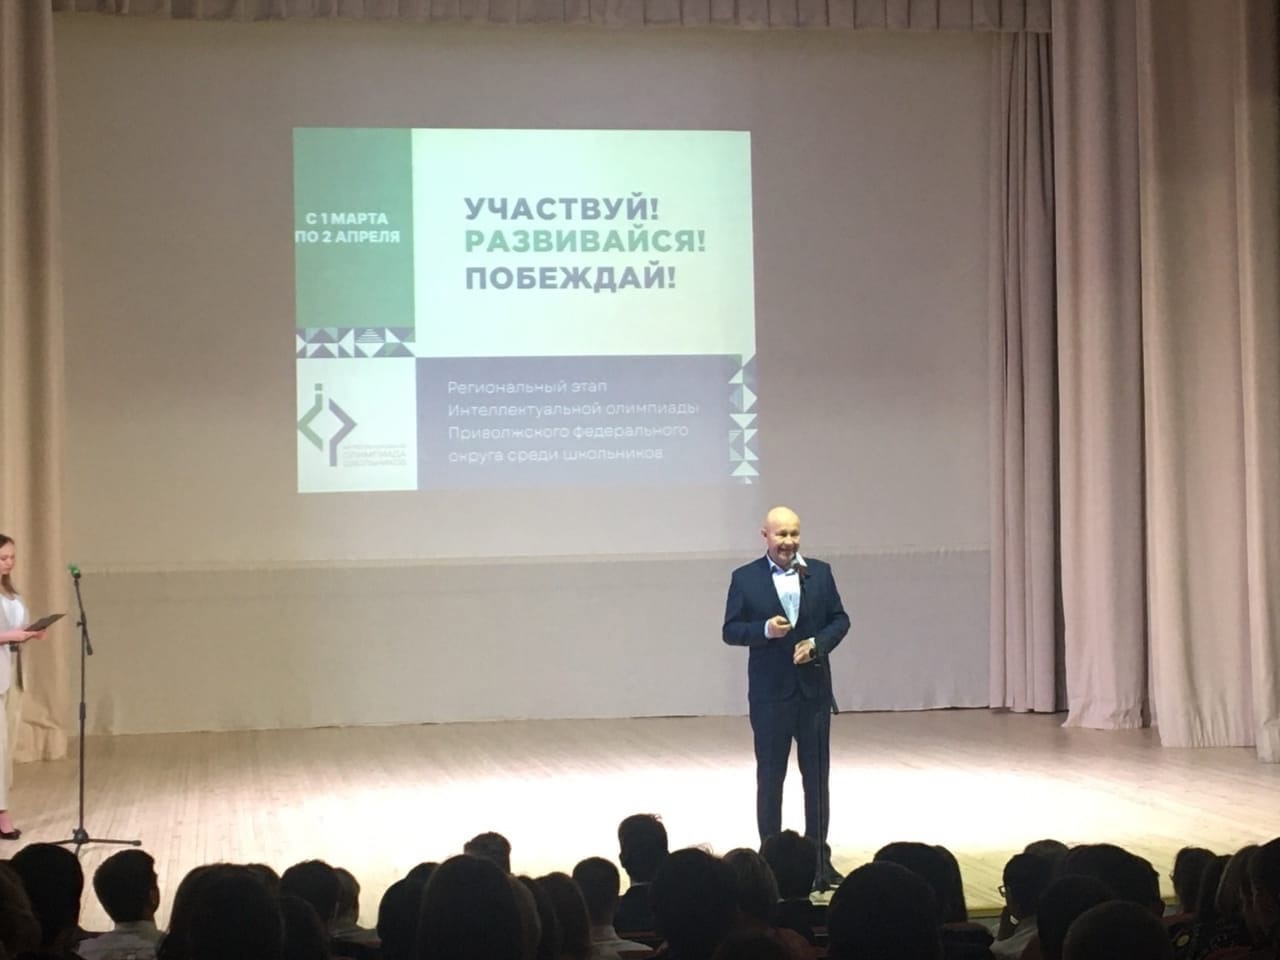 Димитровградцы приняли участие в открытии регионального этапа интеллектуальной олимпиады ПФО среди школьников.